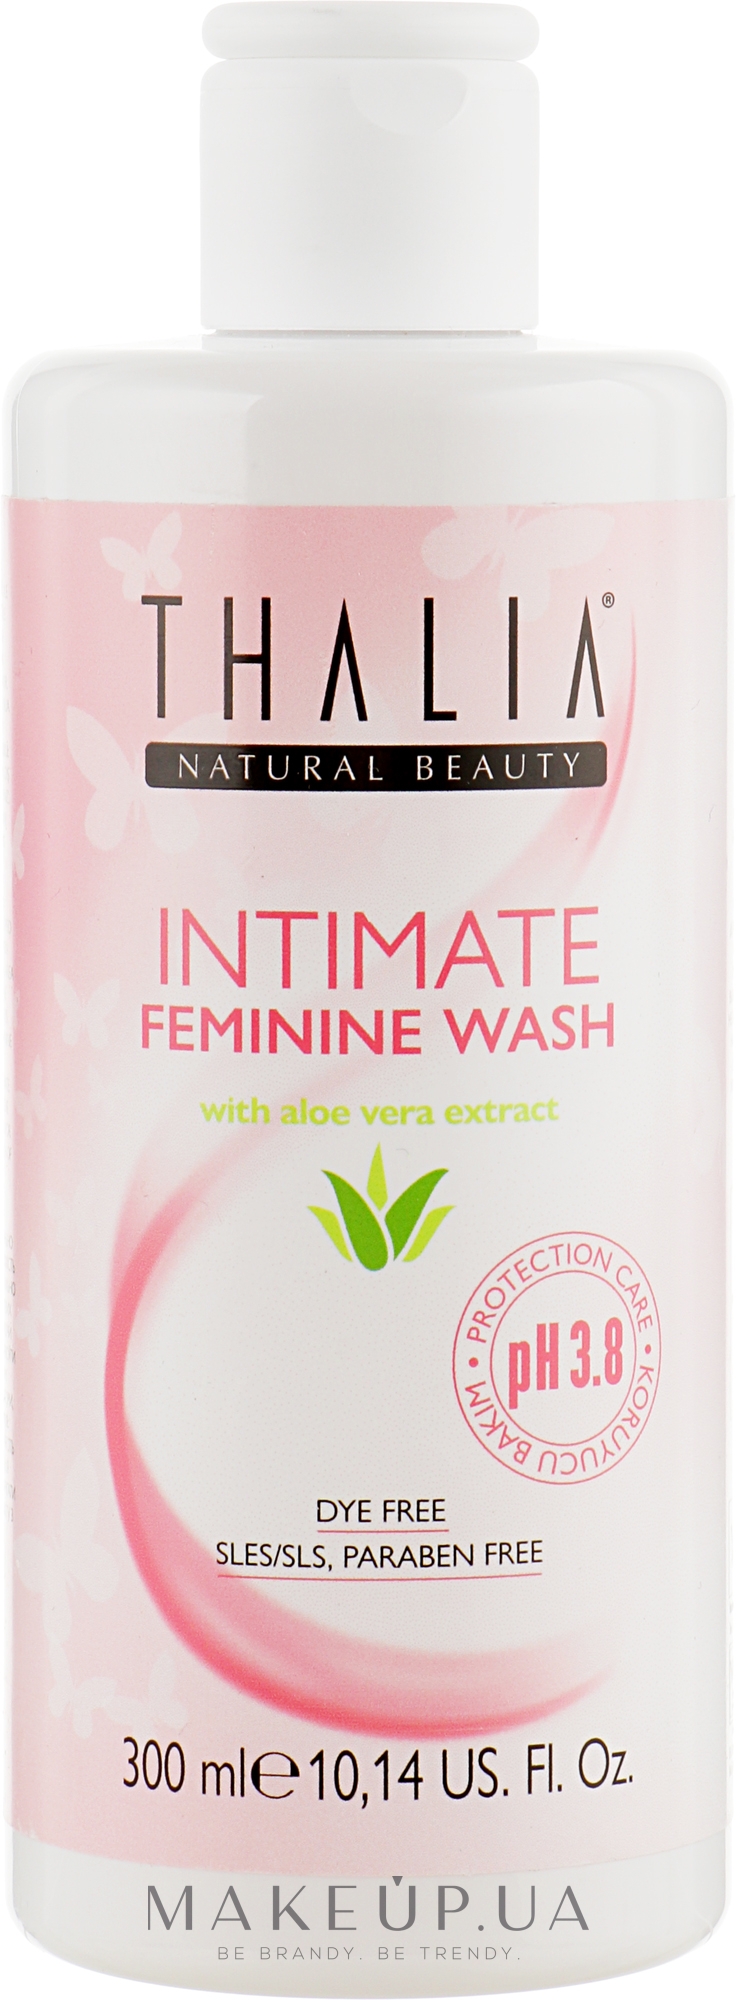 Гель для интимной гигиены - Thalia Intimate Feminine Wash — фото 300ml